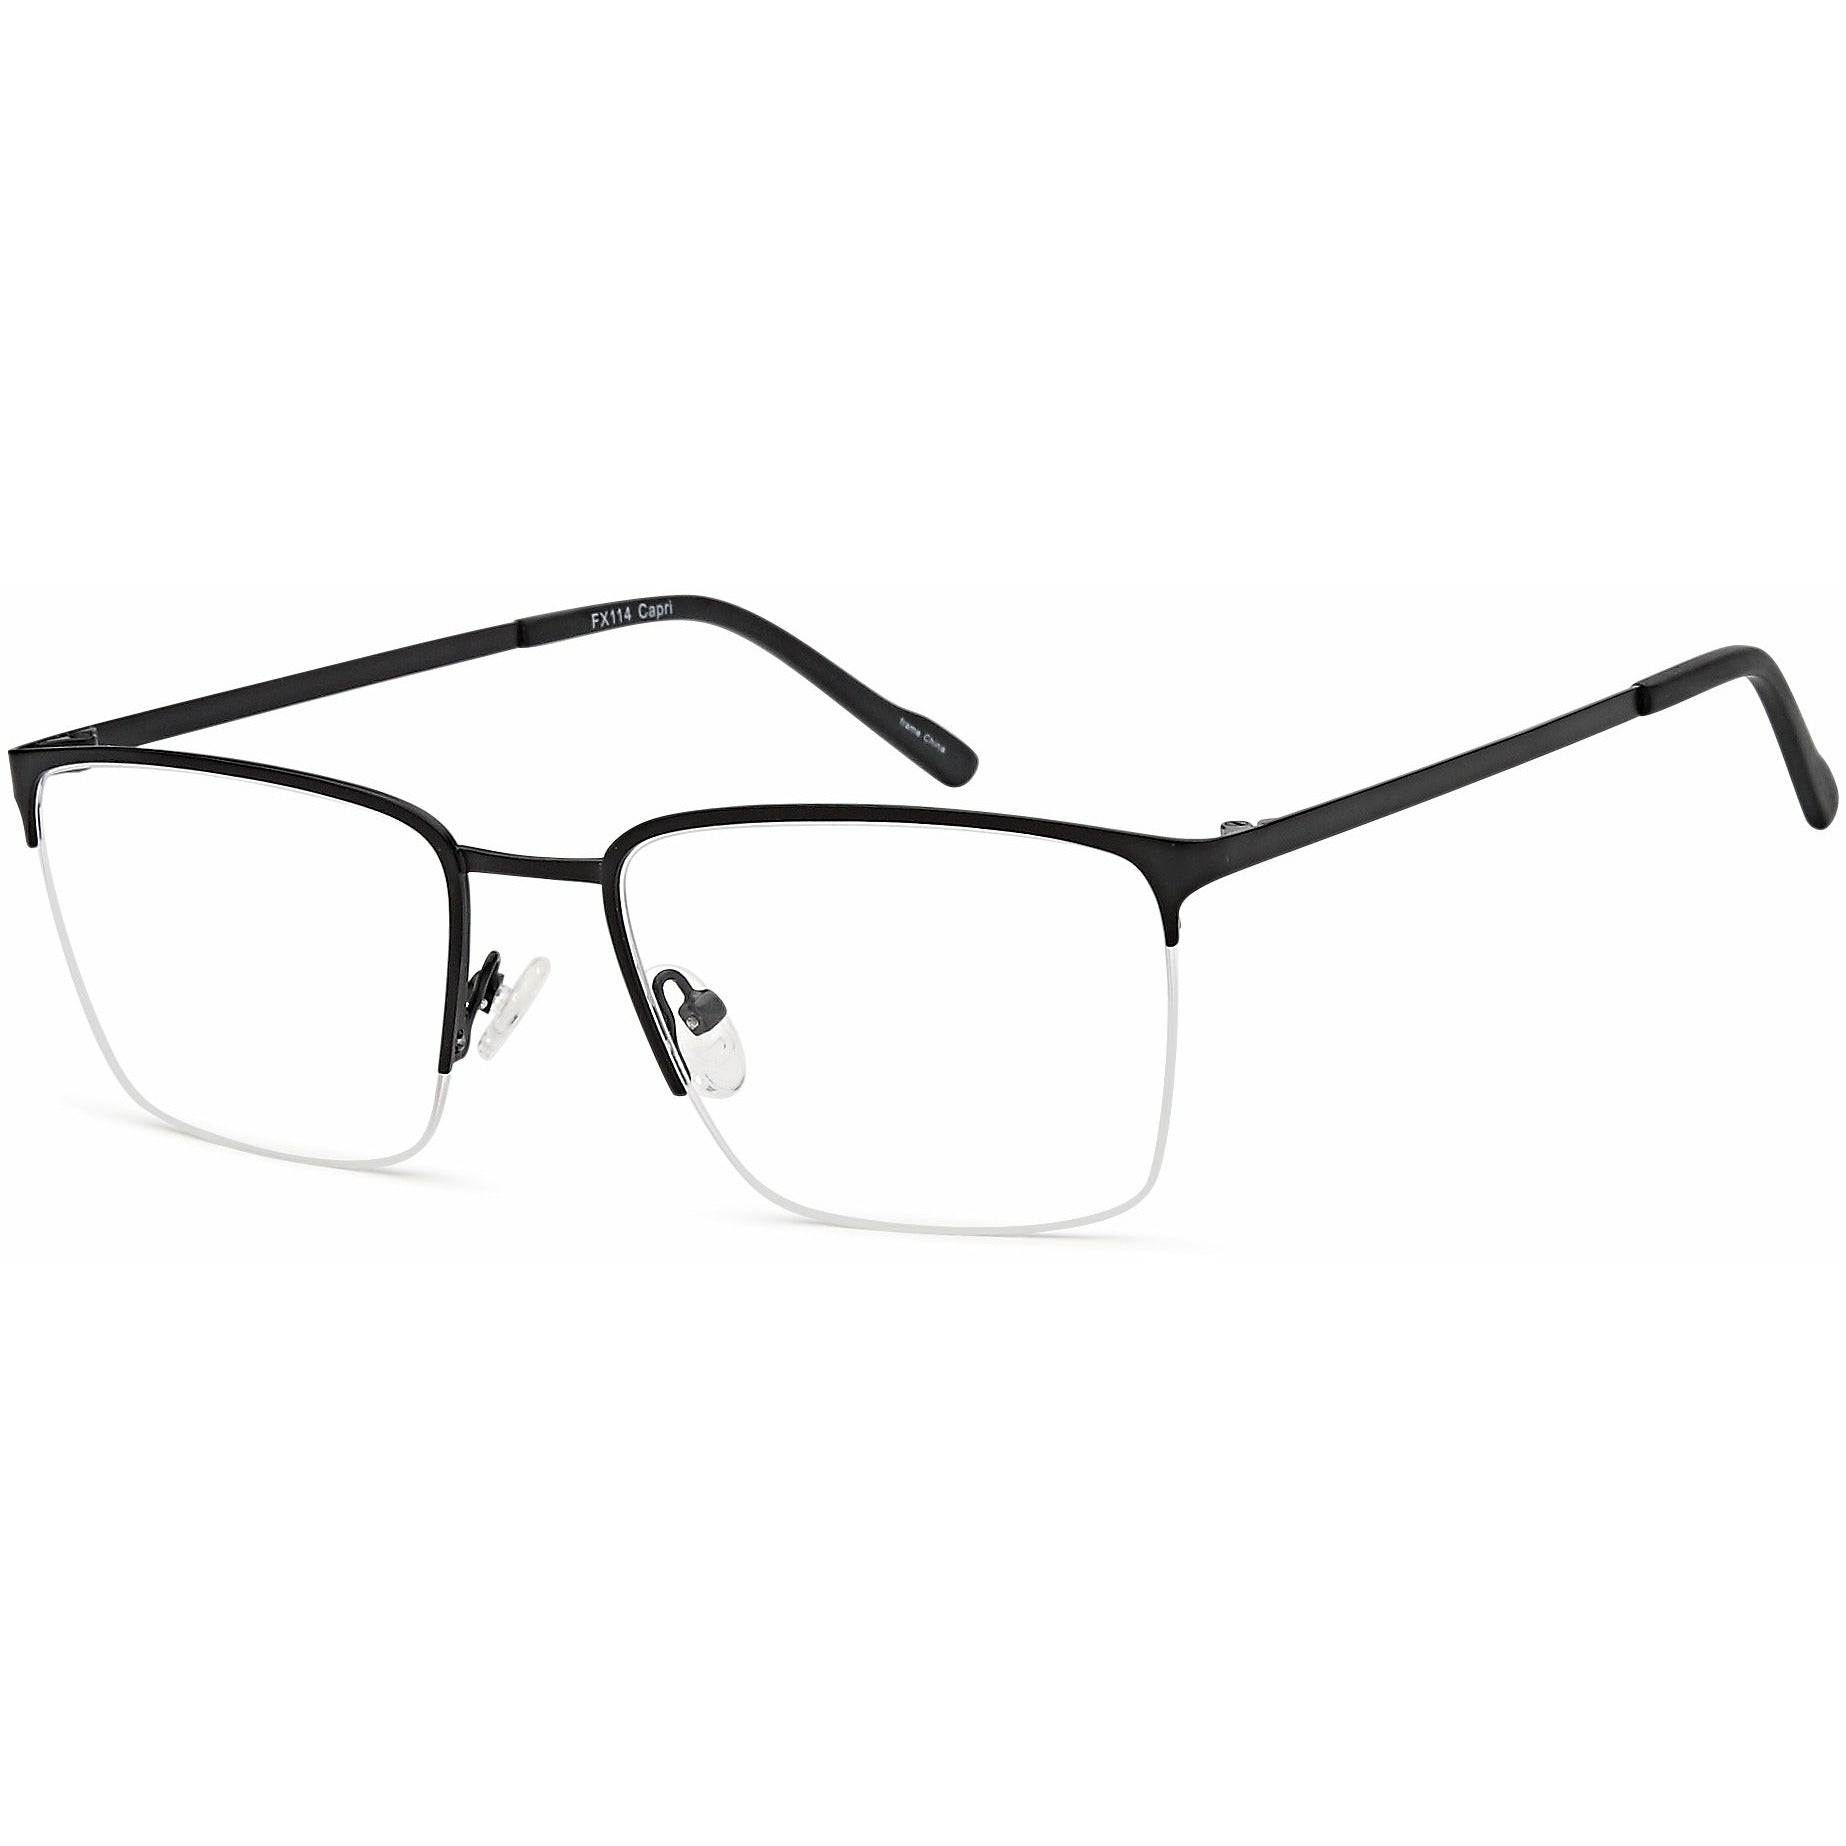 Rectangle Prescription Glasses Frames Online for Women/Men丨ELKLOOK